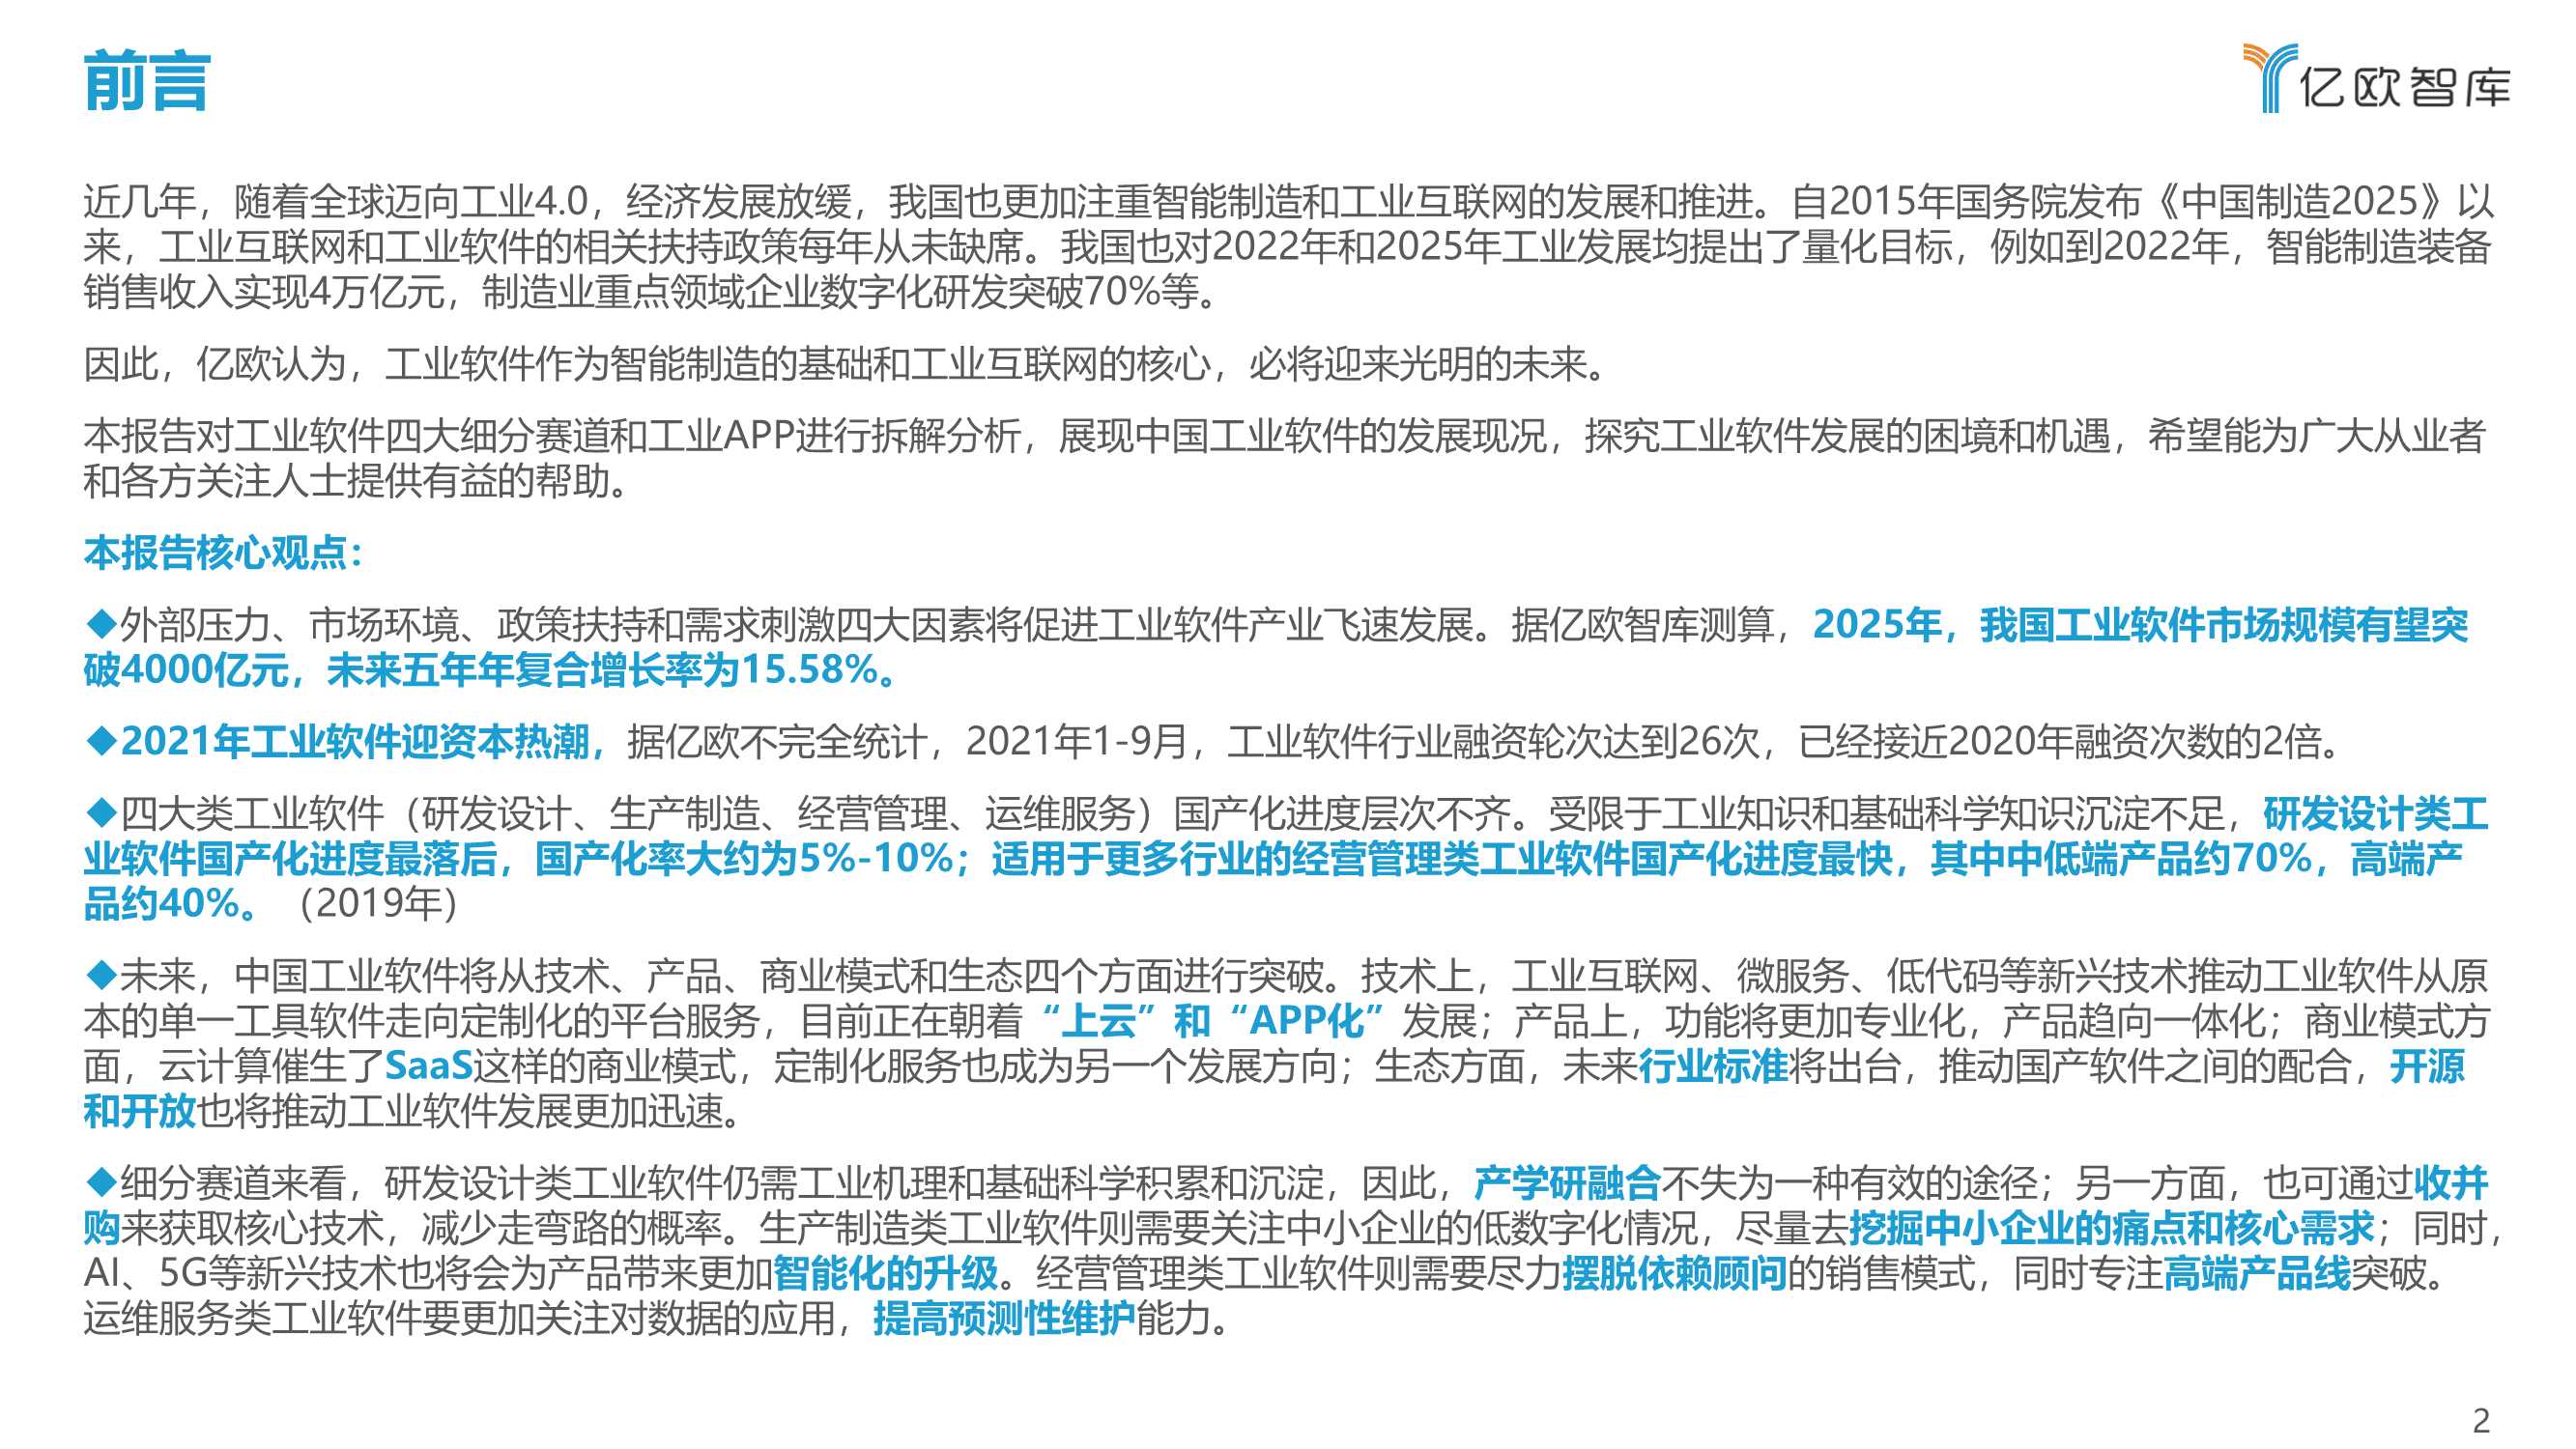 亿欧-2021中国工业软件行业研究报告-2022.01-81页